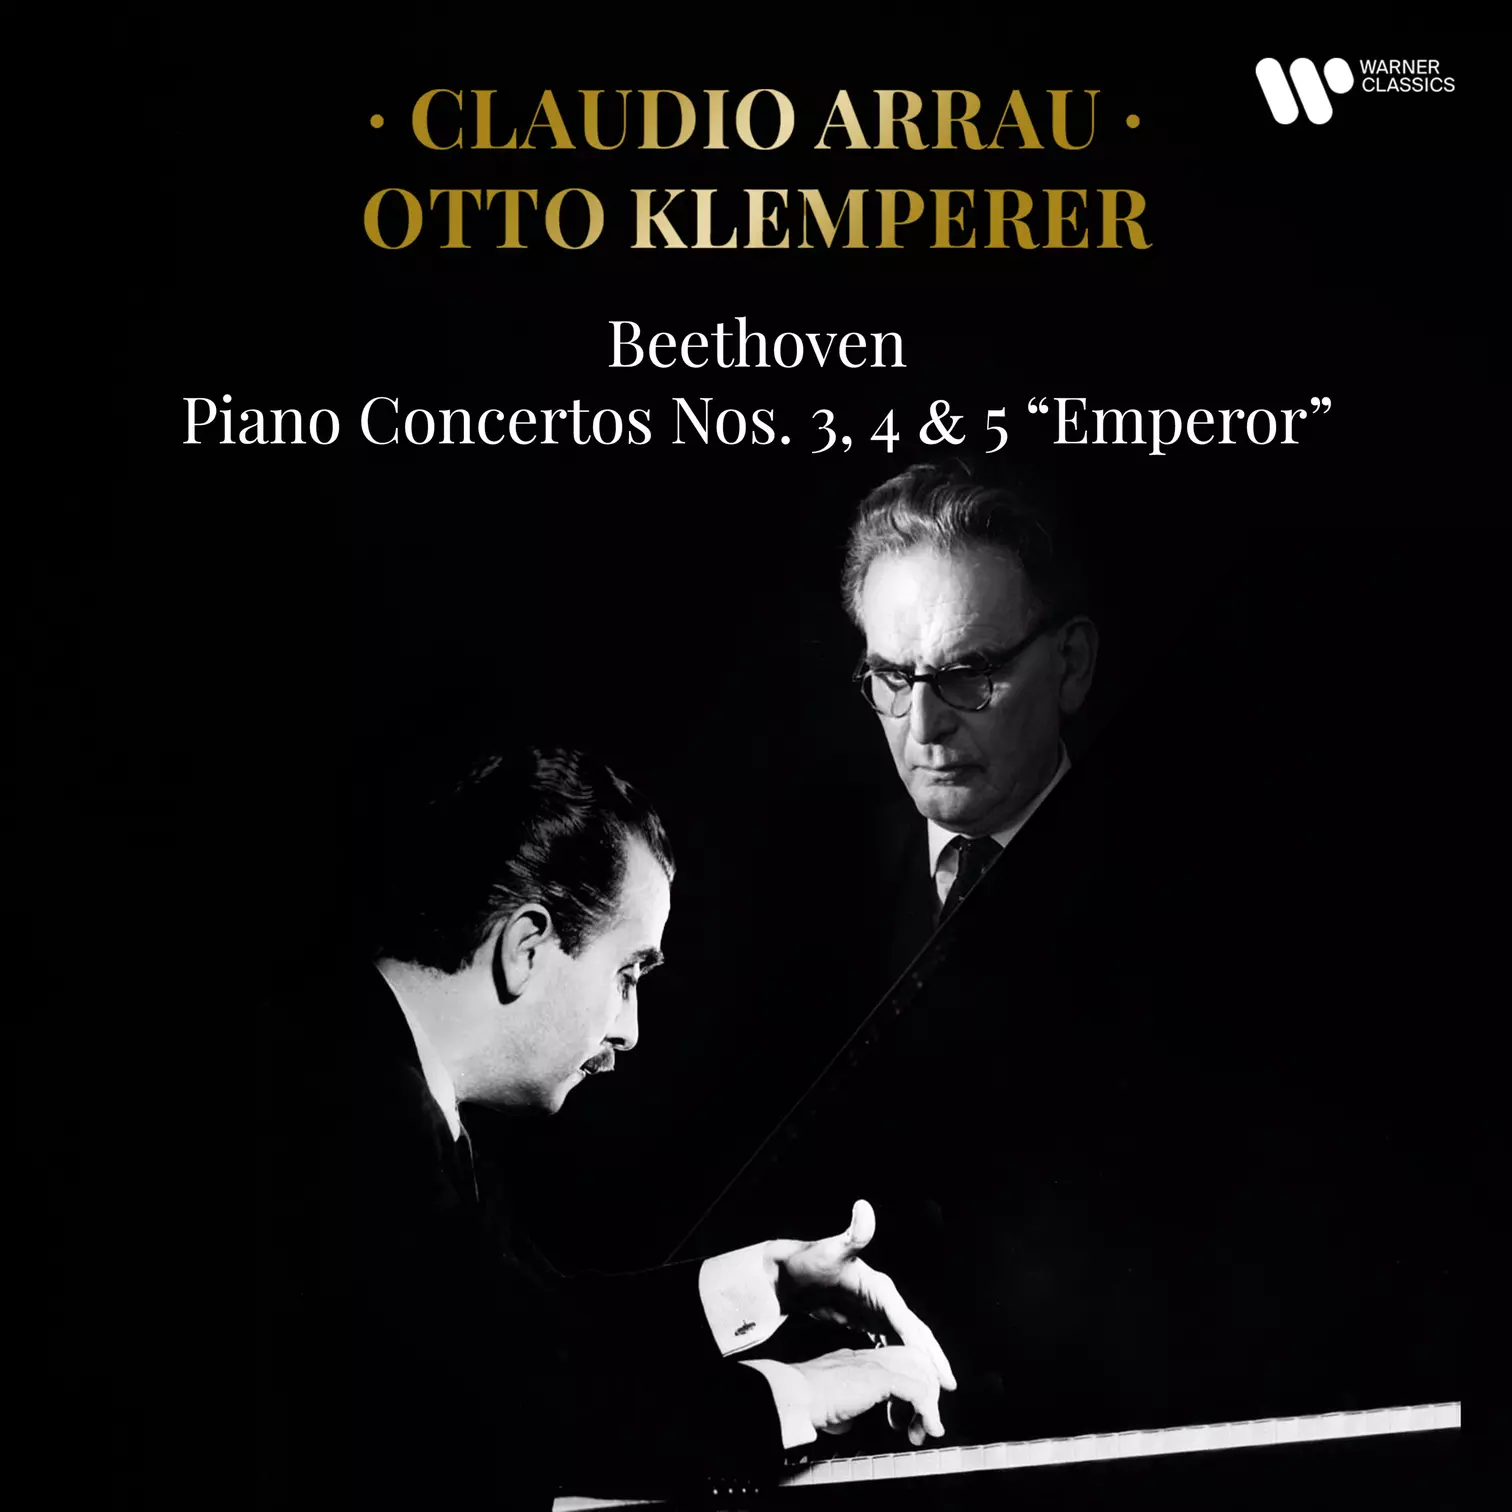 Claudio Arrau, Otto Klemperer - Piano Concertos Nos. 3, 4 & 5 “Emperor”